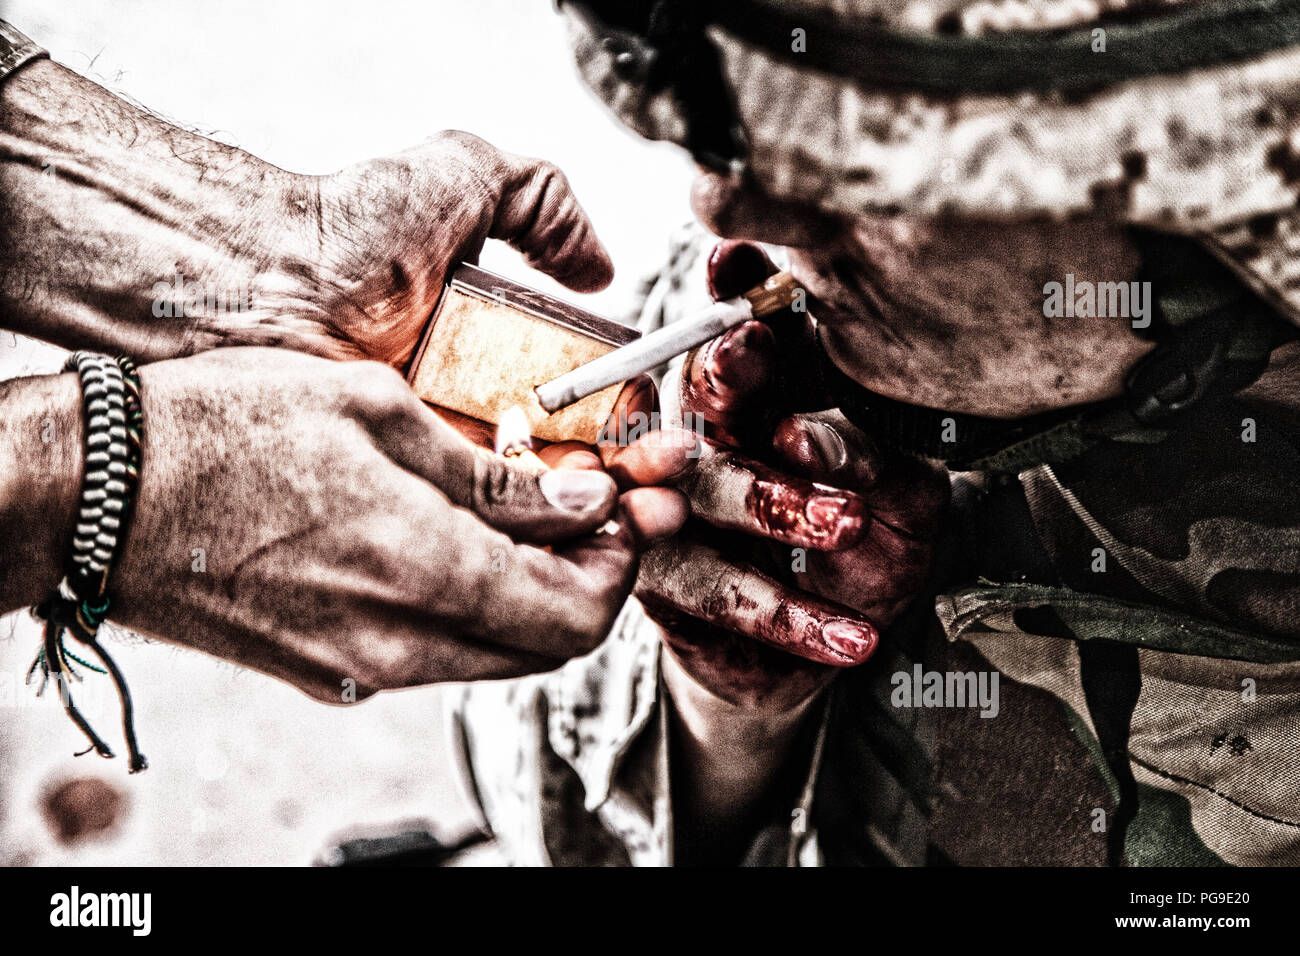 Soldat de l'armée blessé et fumeurs de cigarette allume Banque D'Images